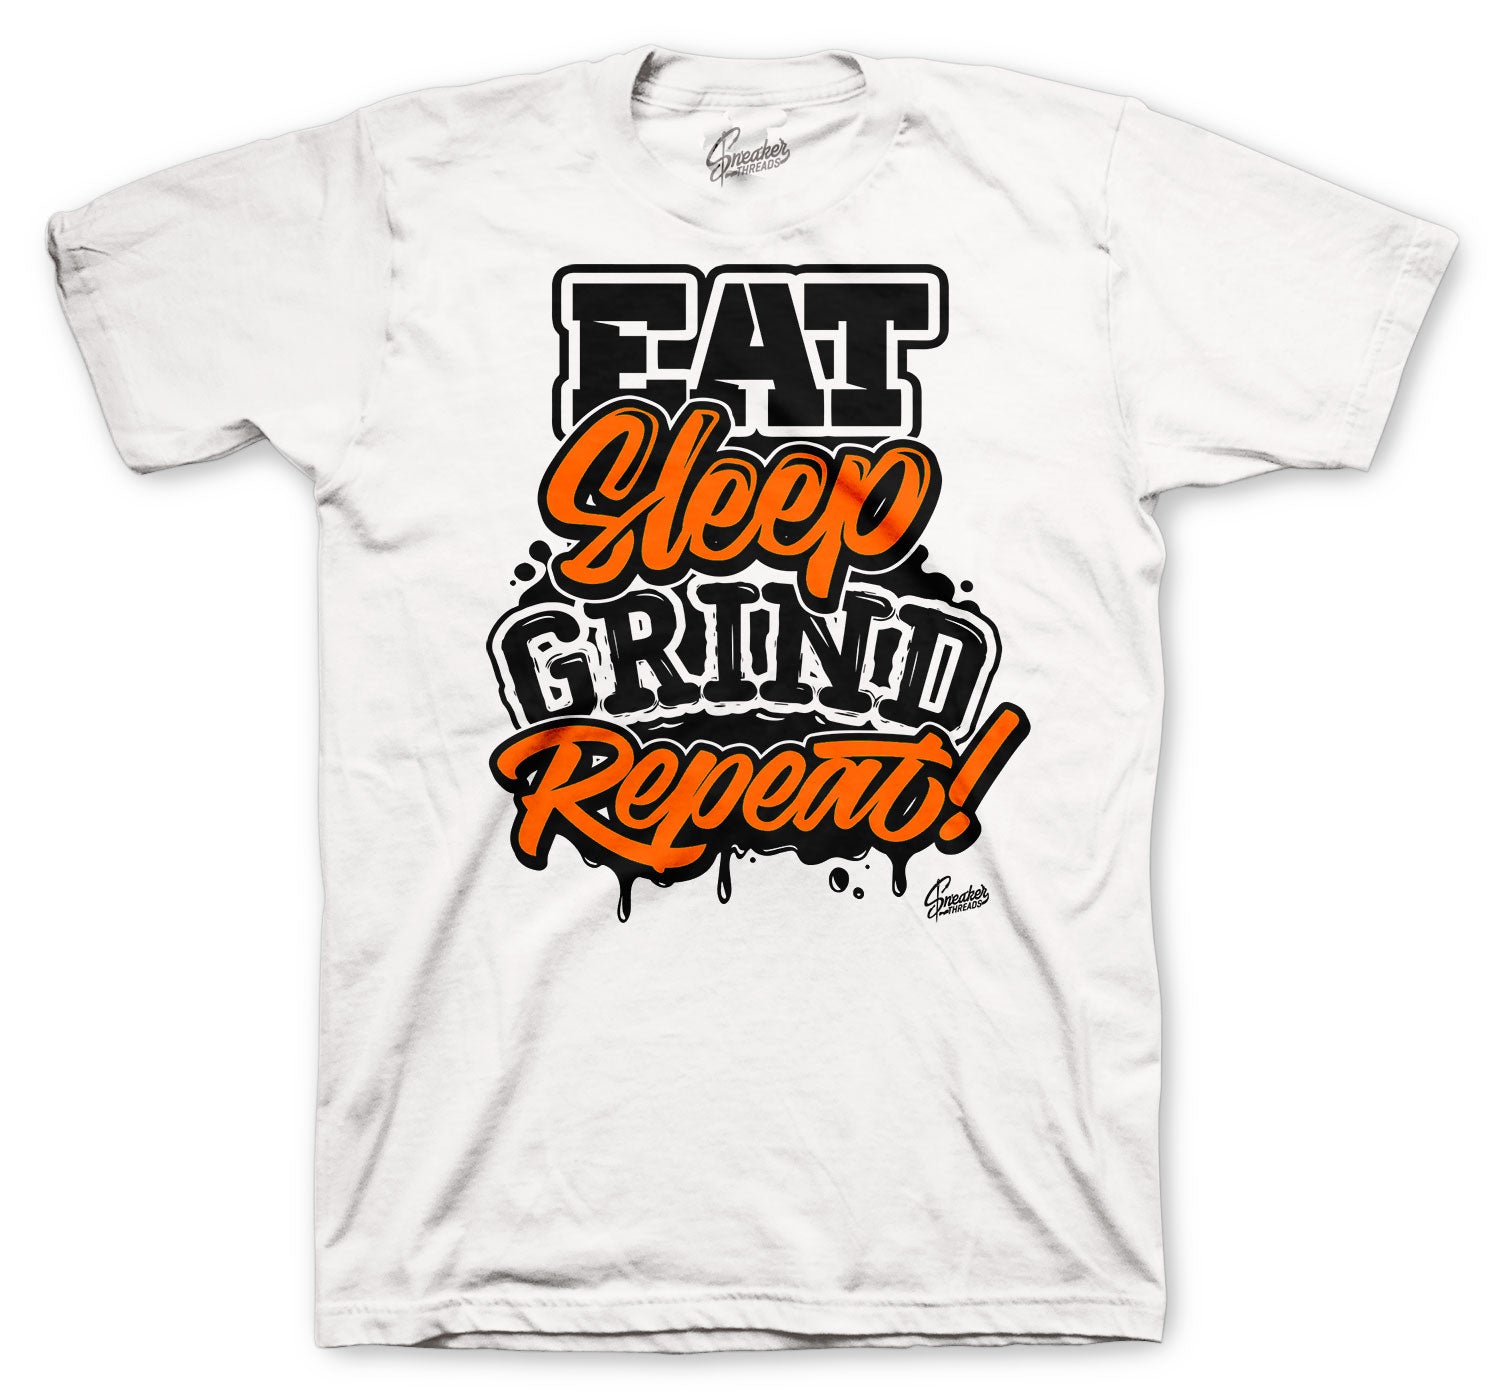 Retro 4 Orange Metallic Shirt - Daily Routine - White